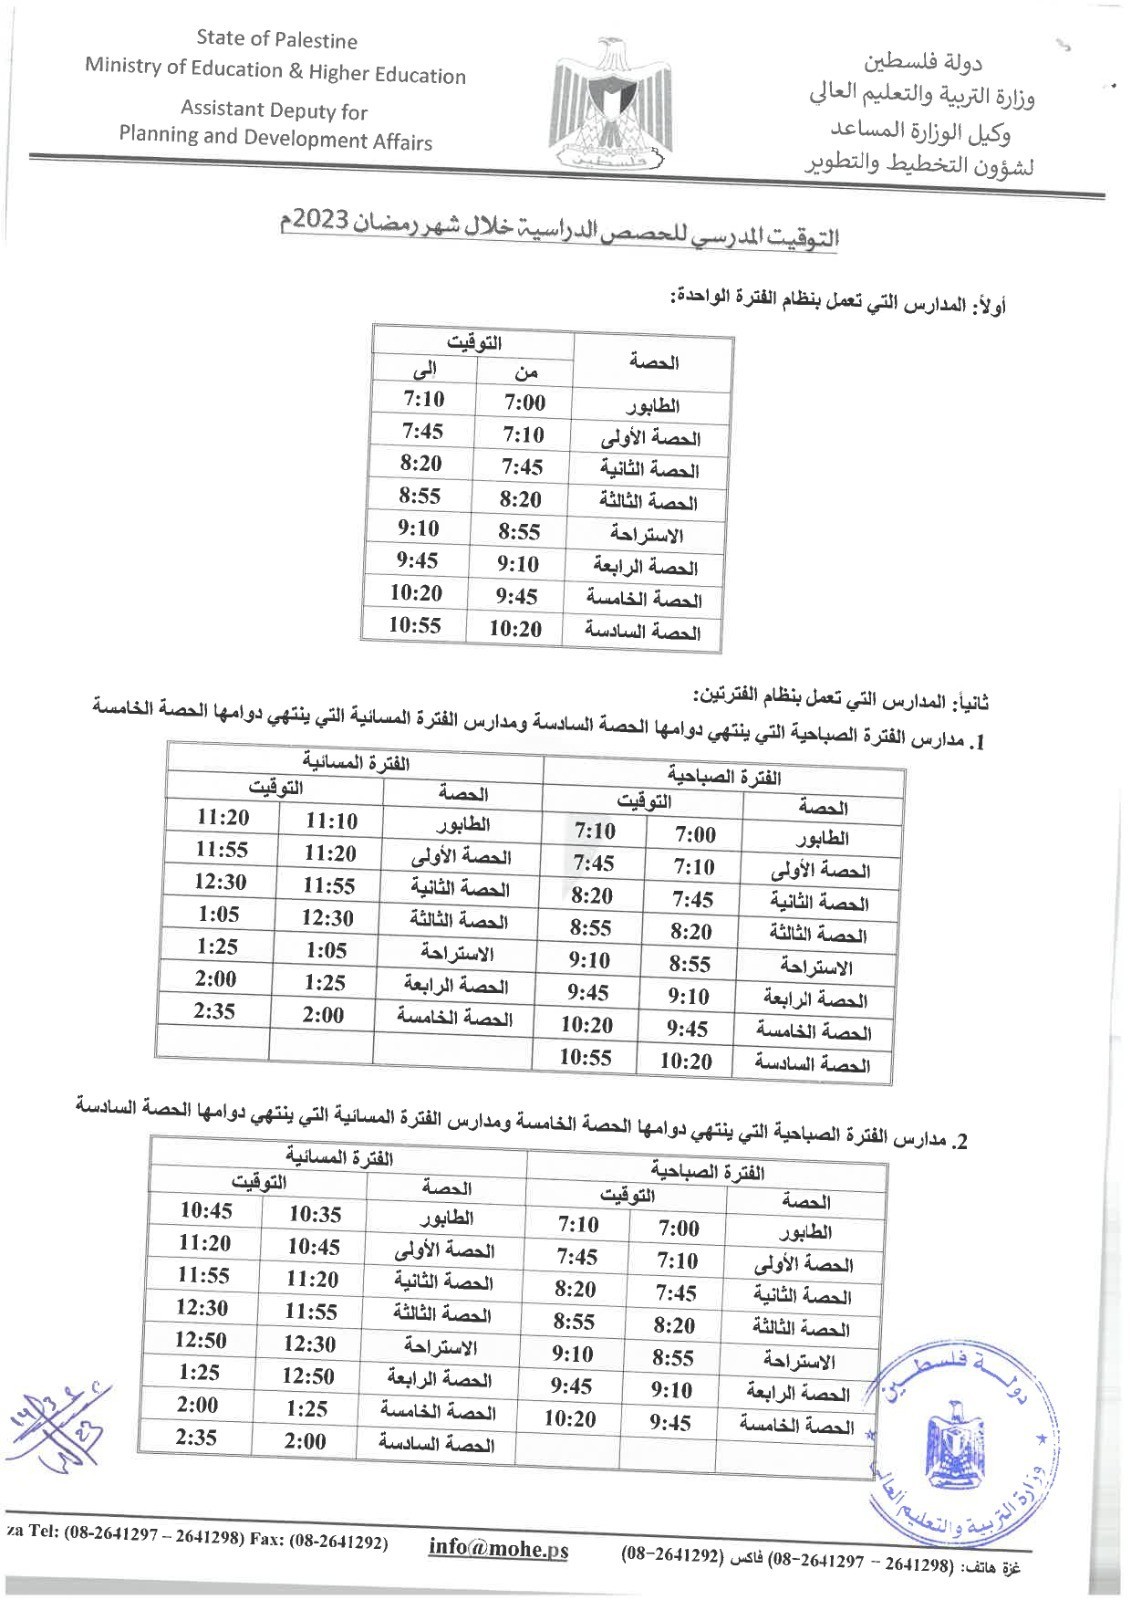 التعليم بغزة تنشر توقيت الحصص الدراسية خلال رمضان 2023